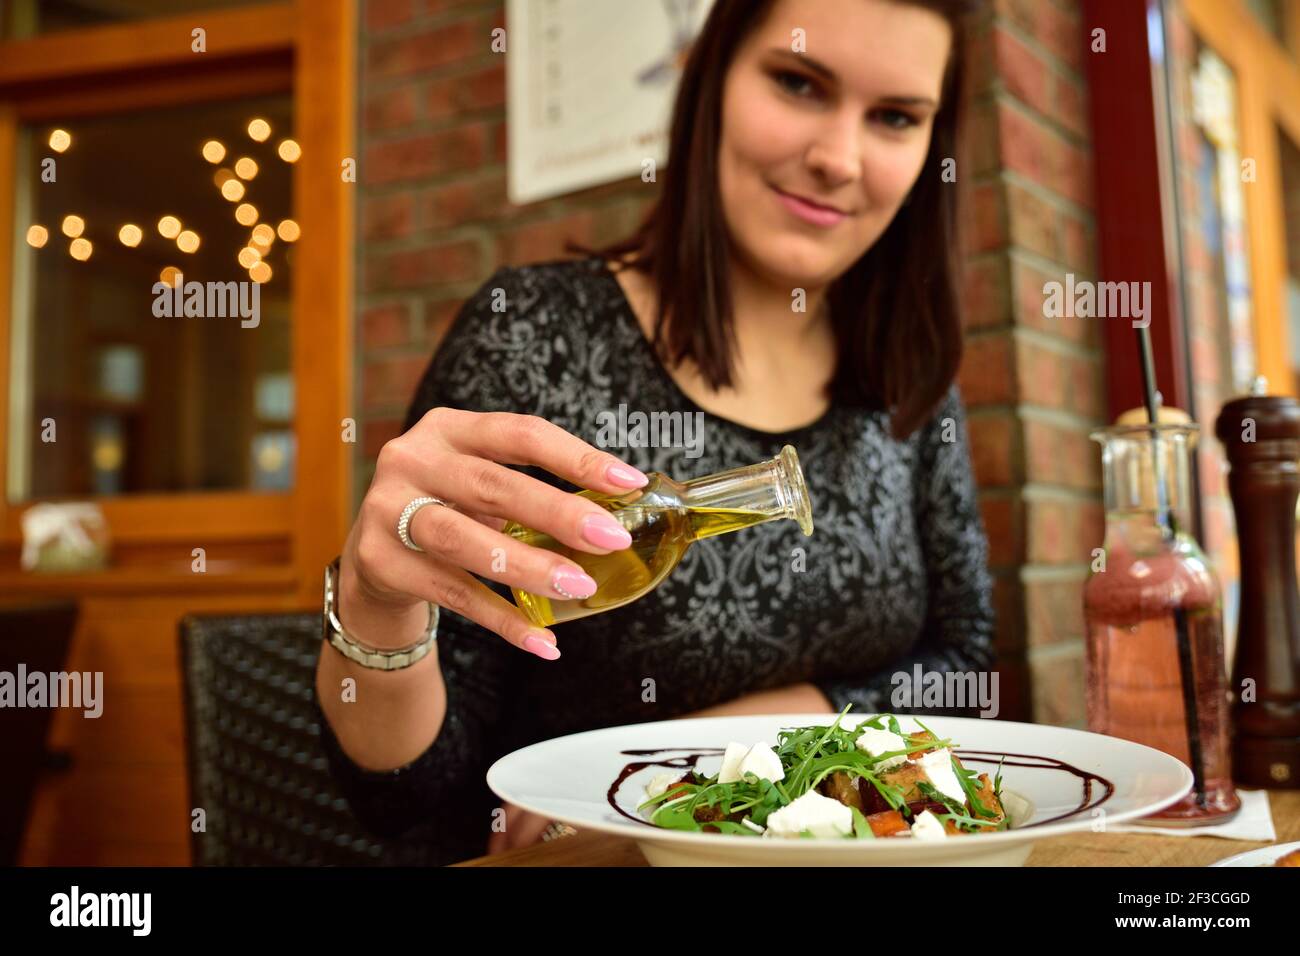 Cibo ristorante con ingredienti freschi - insalata di verdure con capra formaggio e rucola fresca Foto Stock